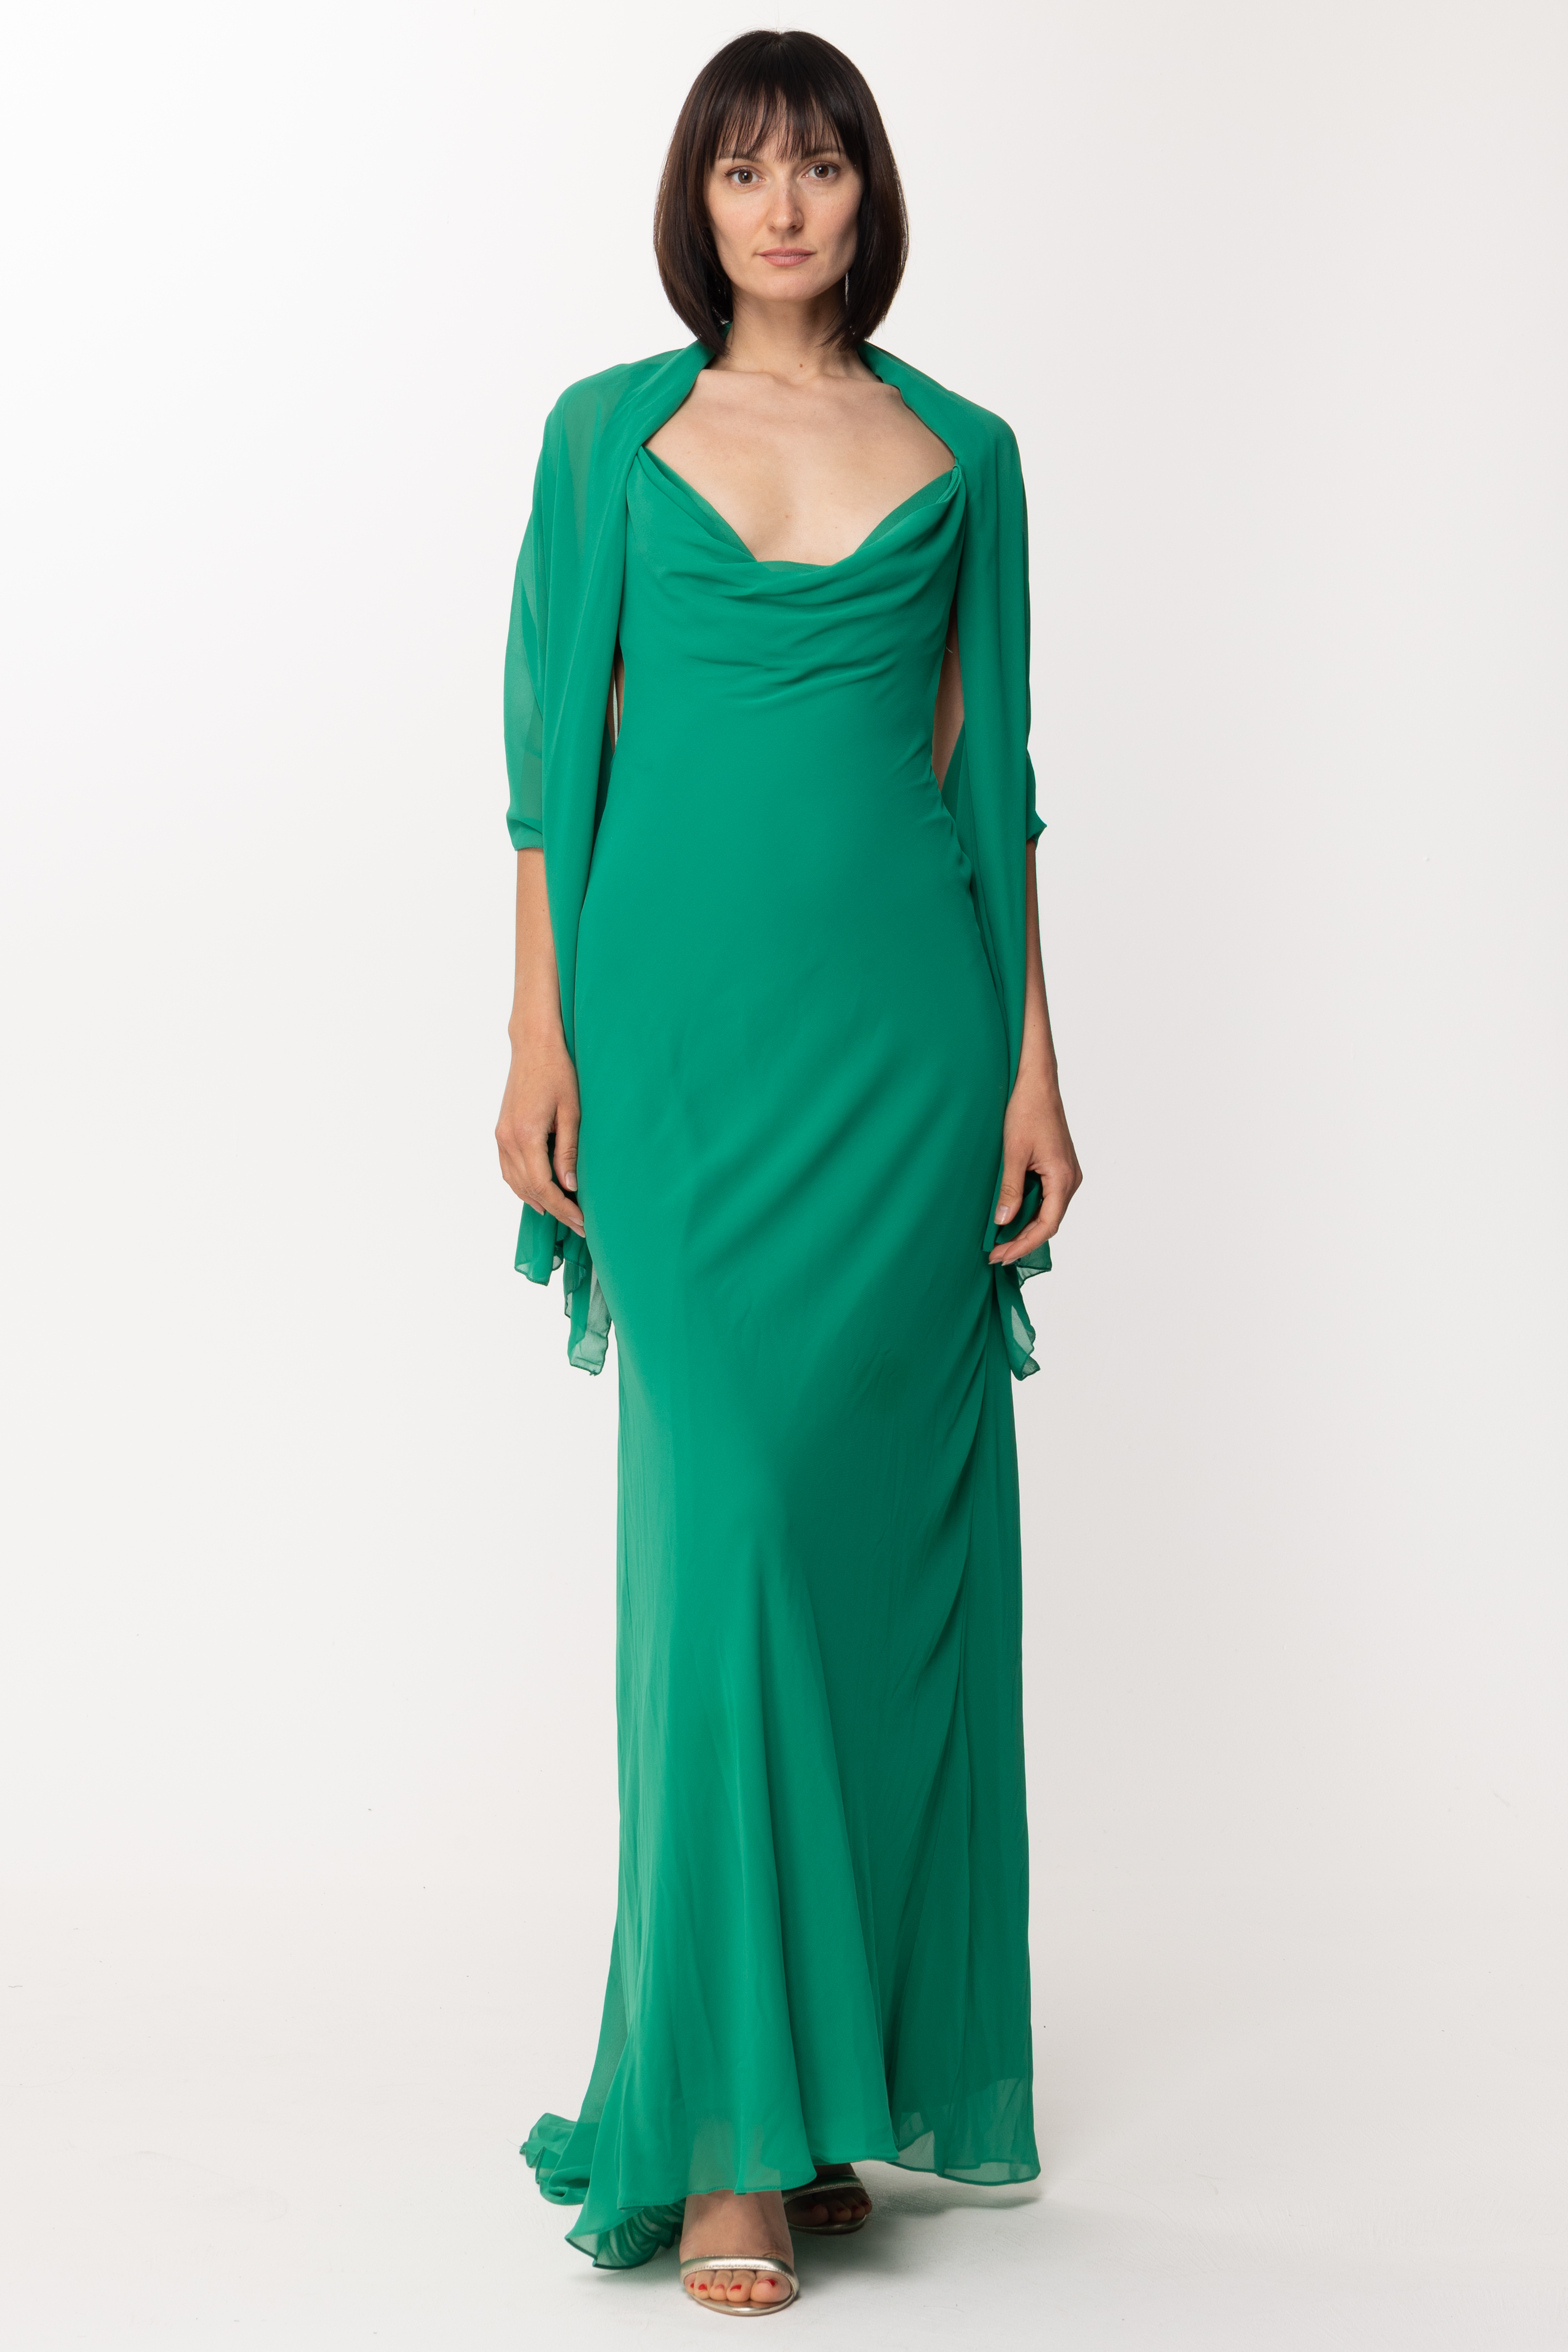 Vorschau: Fabiana Ferri Langes ausgestelltes Kleid Verde